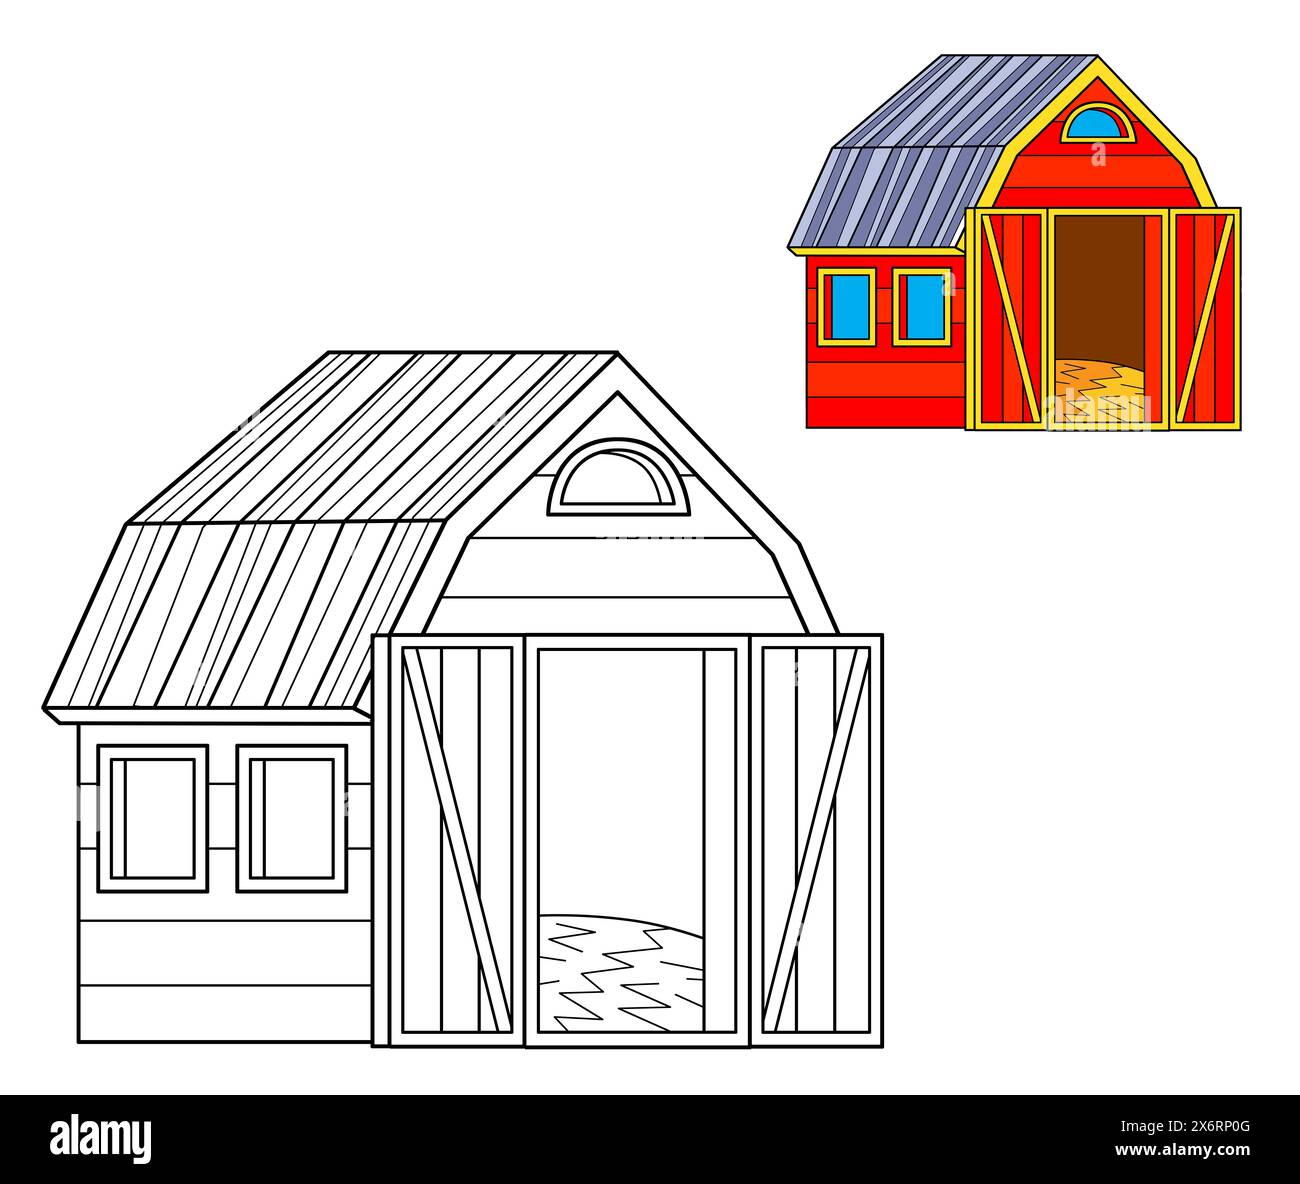 Zeichentrickszene mit Bauernhof-Ranch-Scheune Ausmalseite Zeichnung isolierter Hintergrund mit bunter Vorschauillustration für Kinder Stockfoto